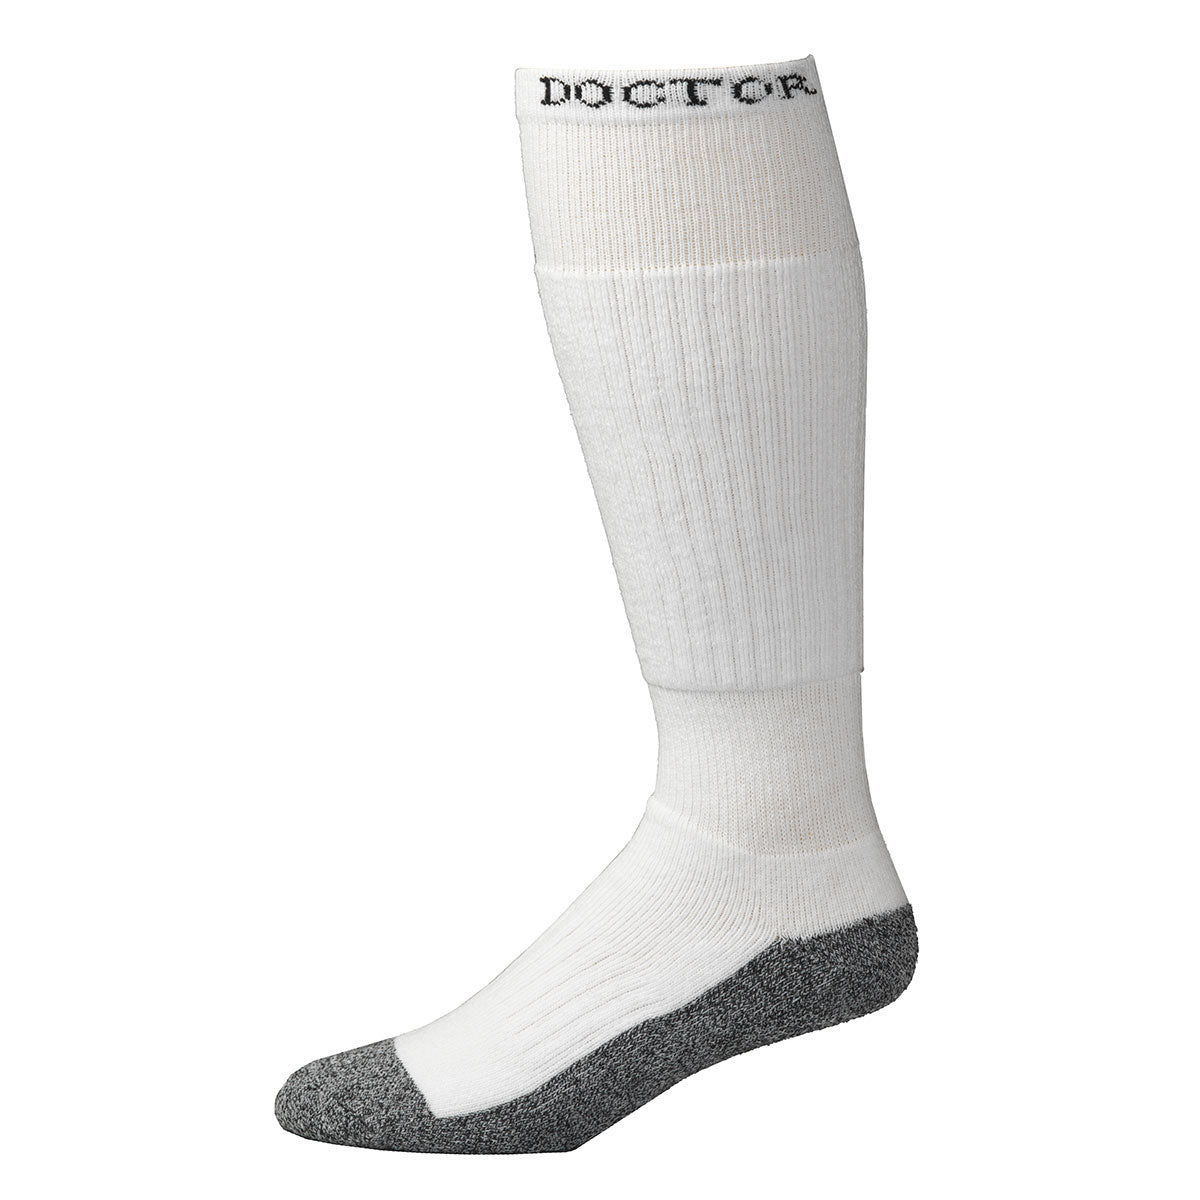 Boot Doctor Men's OTC Full Cushion 2 Pack White Socks